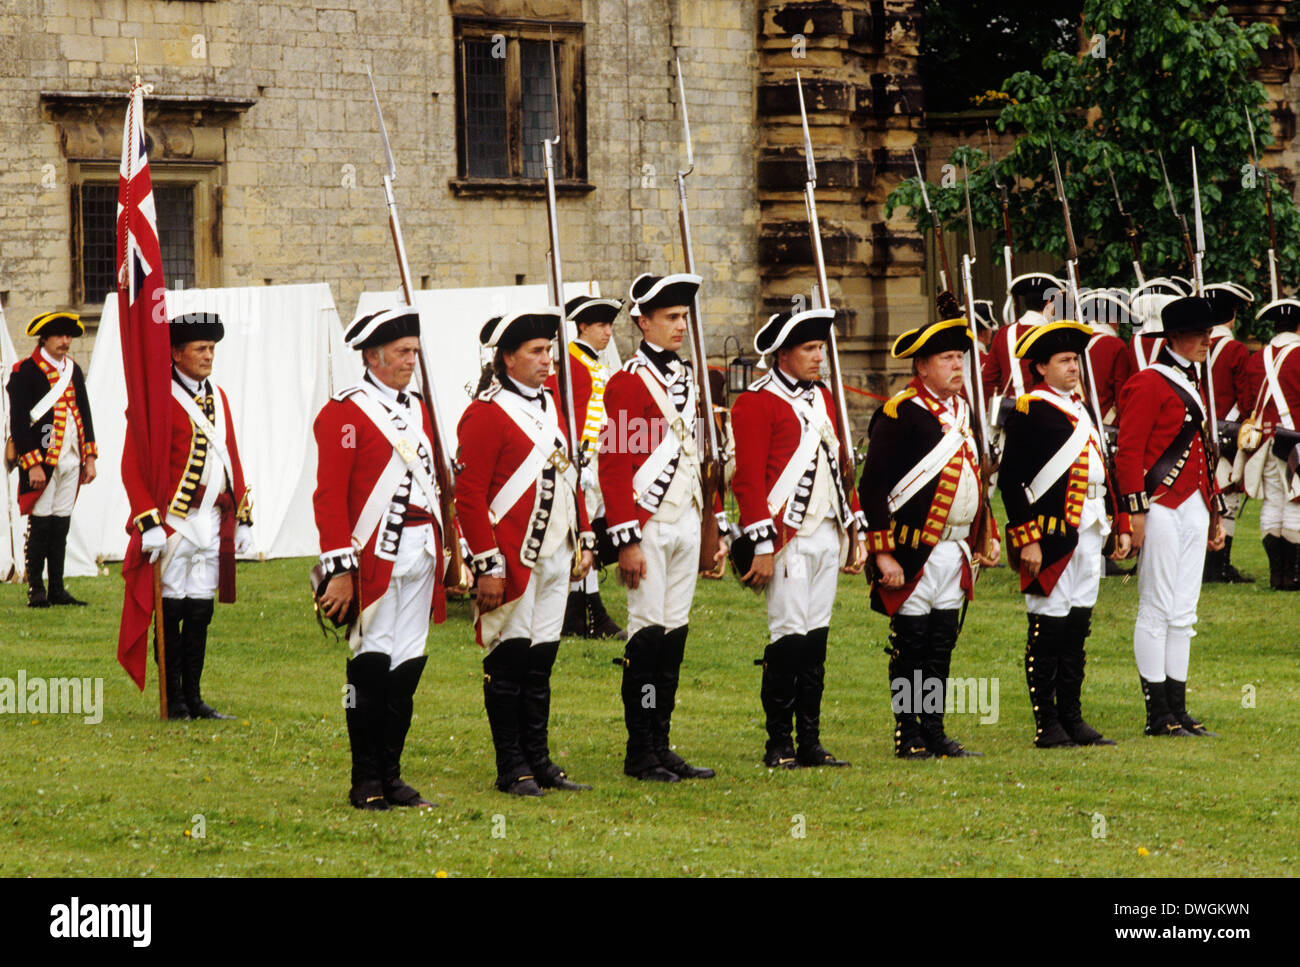 Soldati britannici, 1780, moschetti con annesso baionette, rievocazione storica soldato dell'esercito inglese uniformi uniforme fine xviii secolo in Inghilterra UK moschetto redcoats Foto Stock